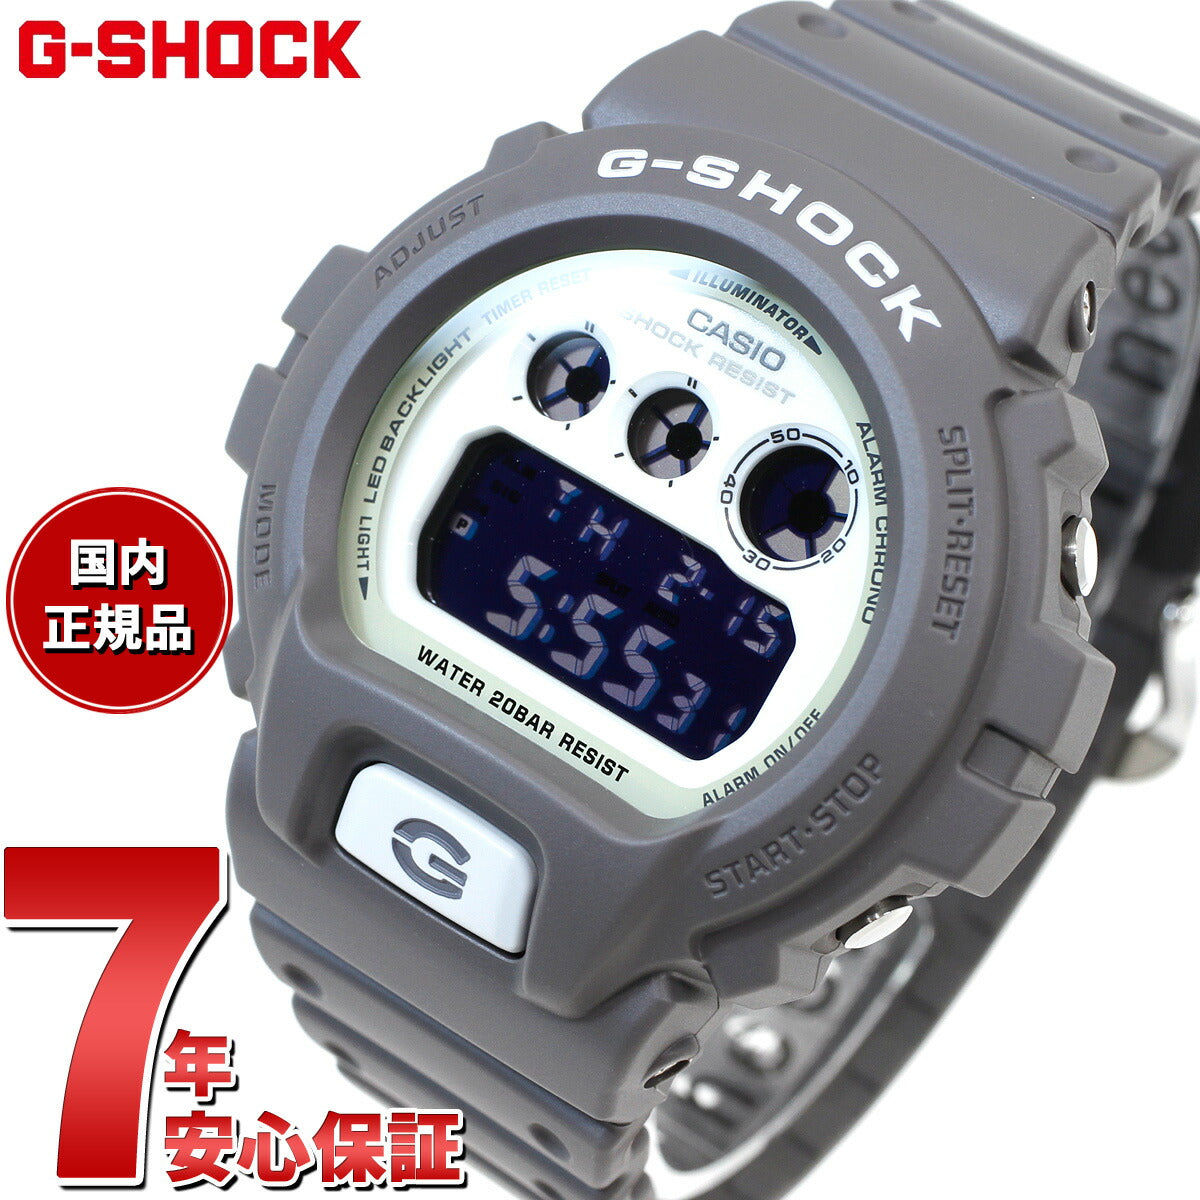 G-SHOCK デジタル メンズ 腕時計 カシオ CASIO DW-6900HD-8JF HIDDEN GLOW Series グレー【20 –  neel selectshop